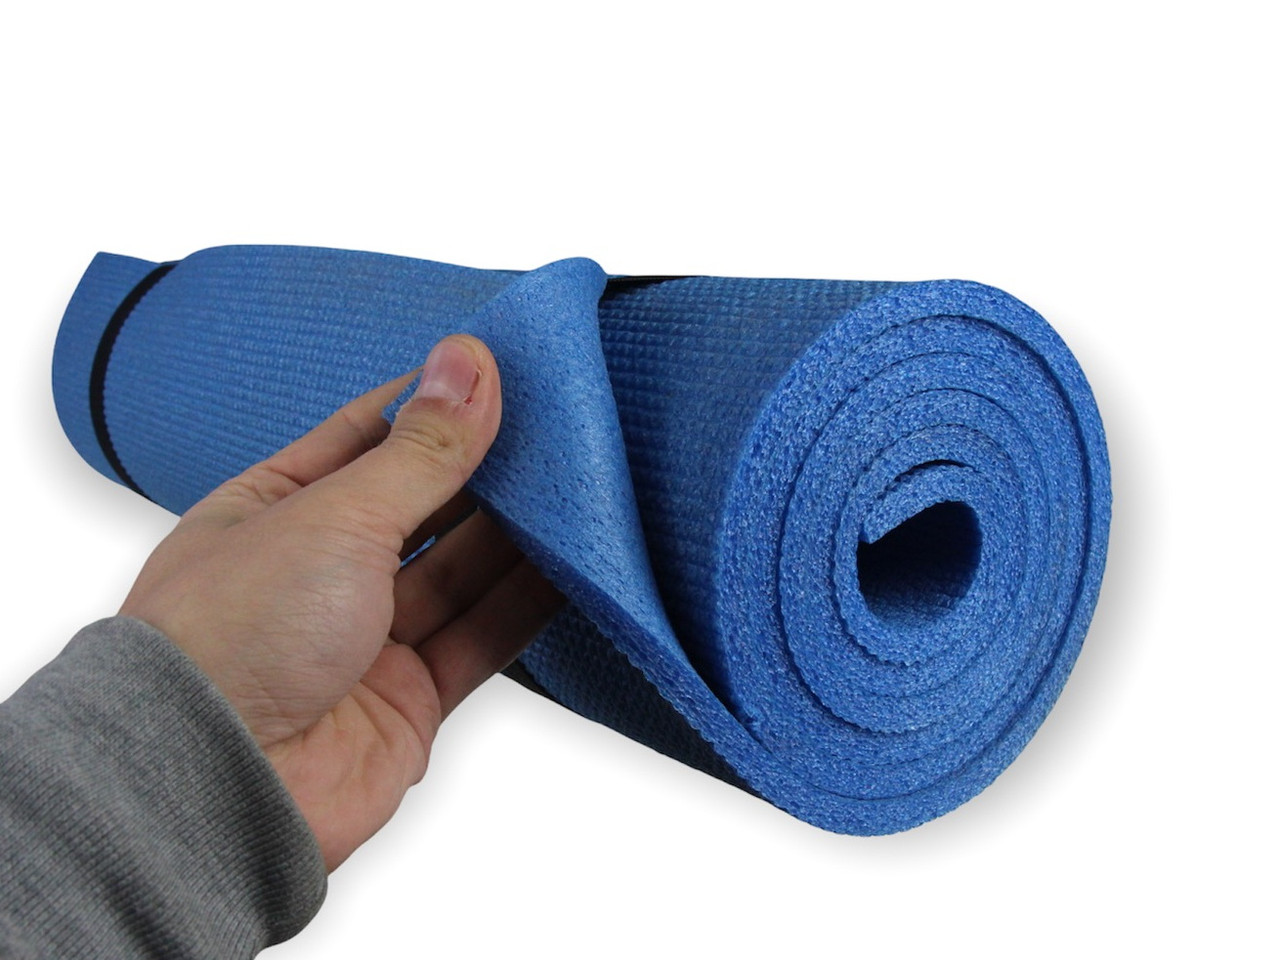 Коврик для фитнеса и йоги AEROBICA 8, синий, толщина 8мм, ширина 60см детальная фотка